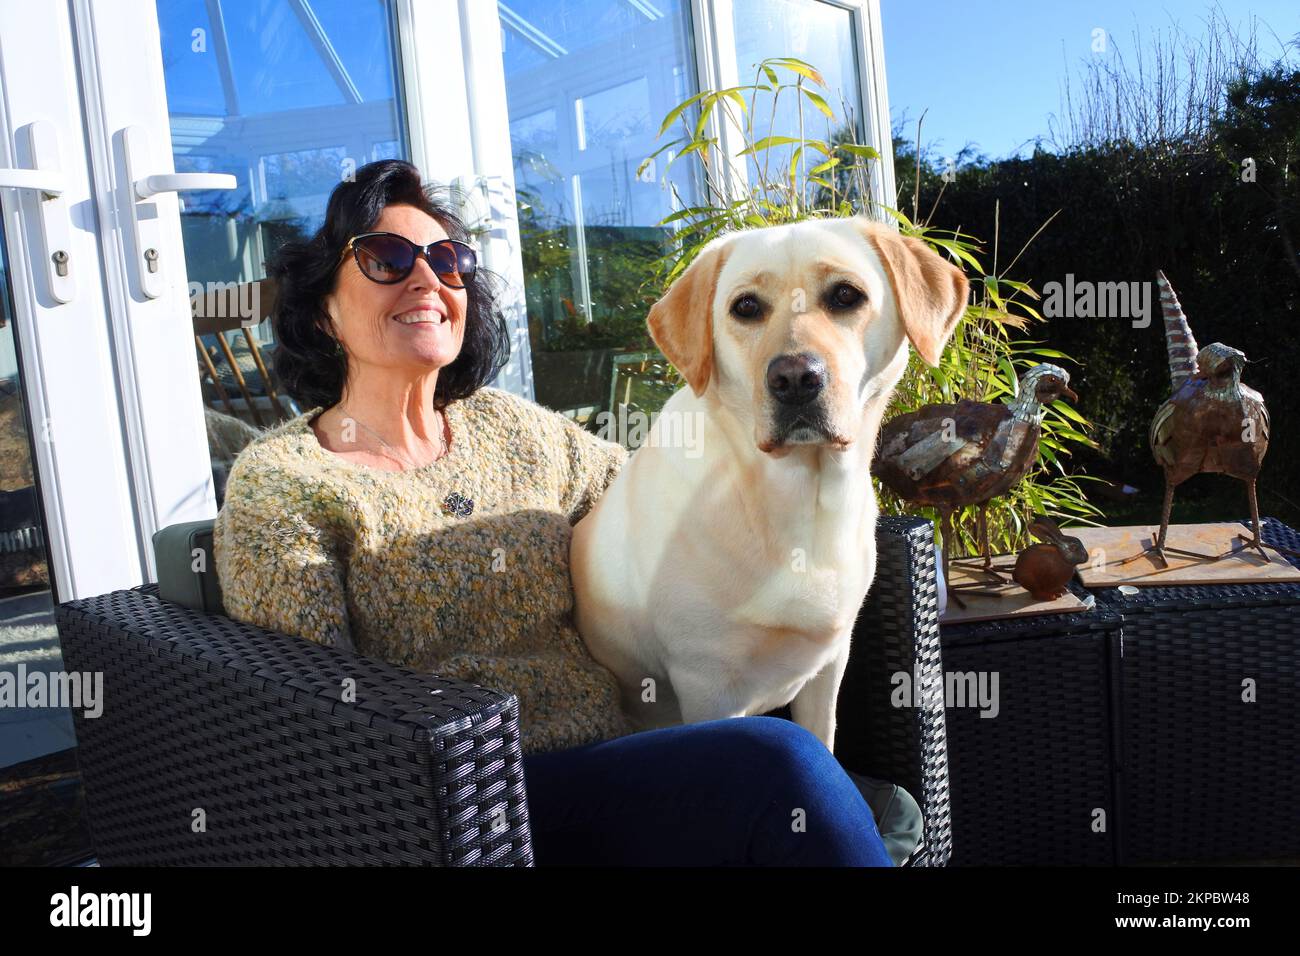 Belle femme mature assise sur un patio avec son animal de compagnie jaune labrador Retriever - John Gollop Banque D'Images